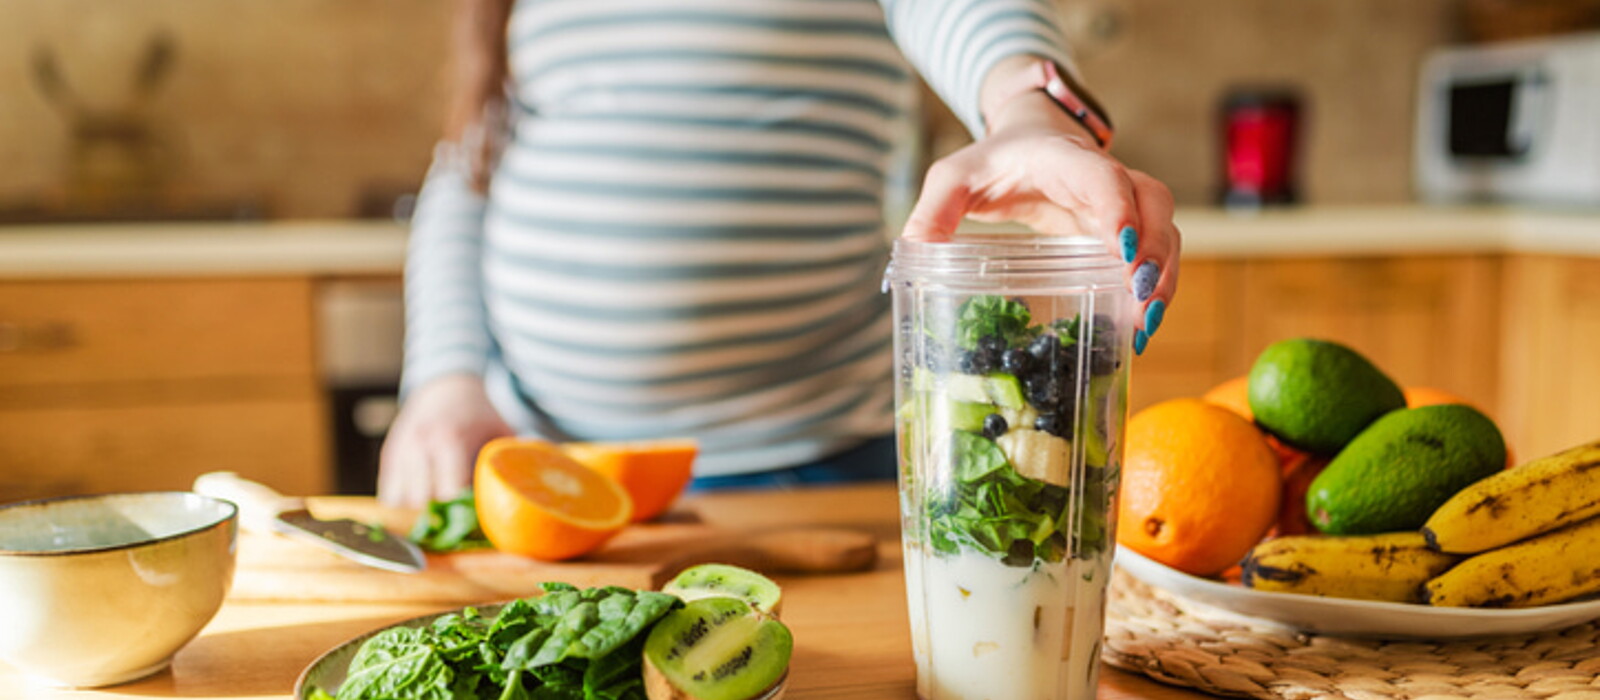 อาหารเพิ่มน้ำหนักลูกในครรภ์ให้เหมาะสม คุณแม่ควรกินอะไรให้สุขภาพดีทั้งแม่และลูก